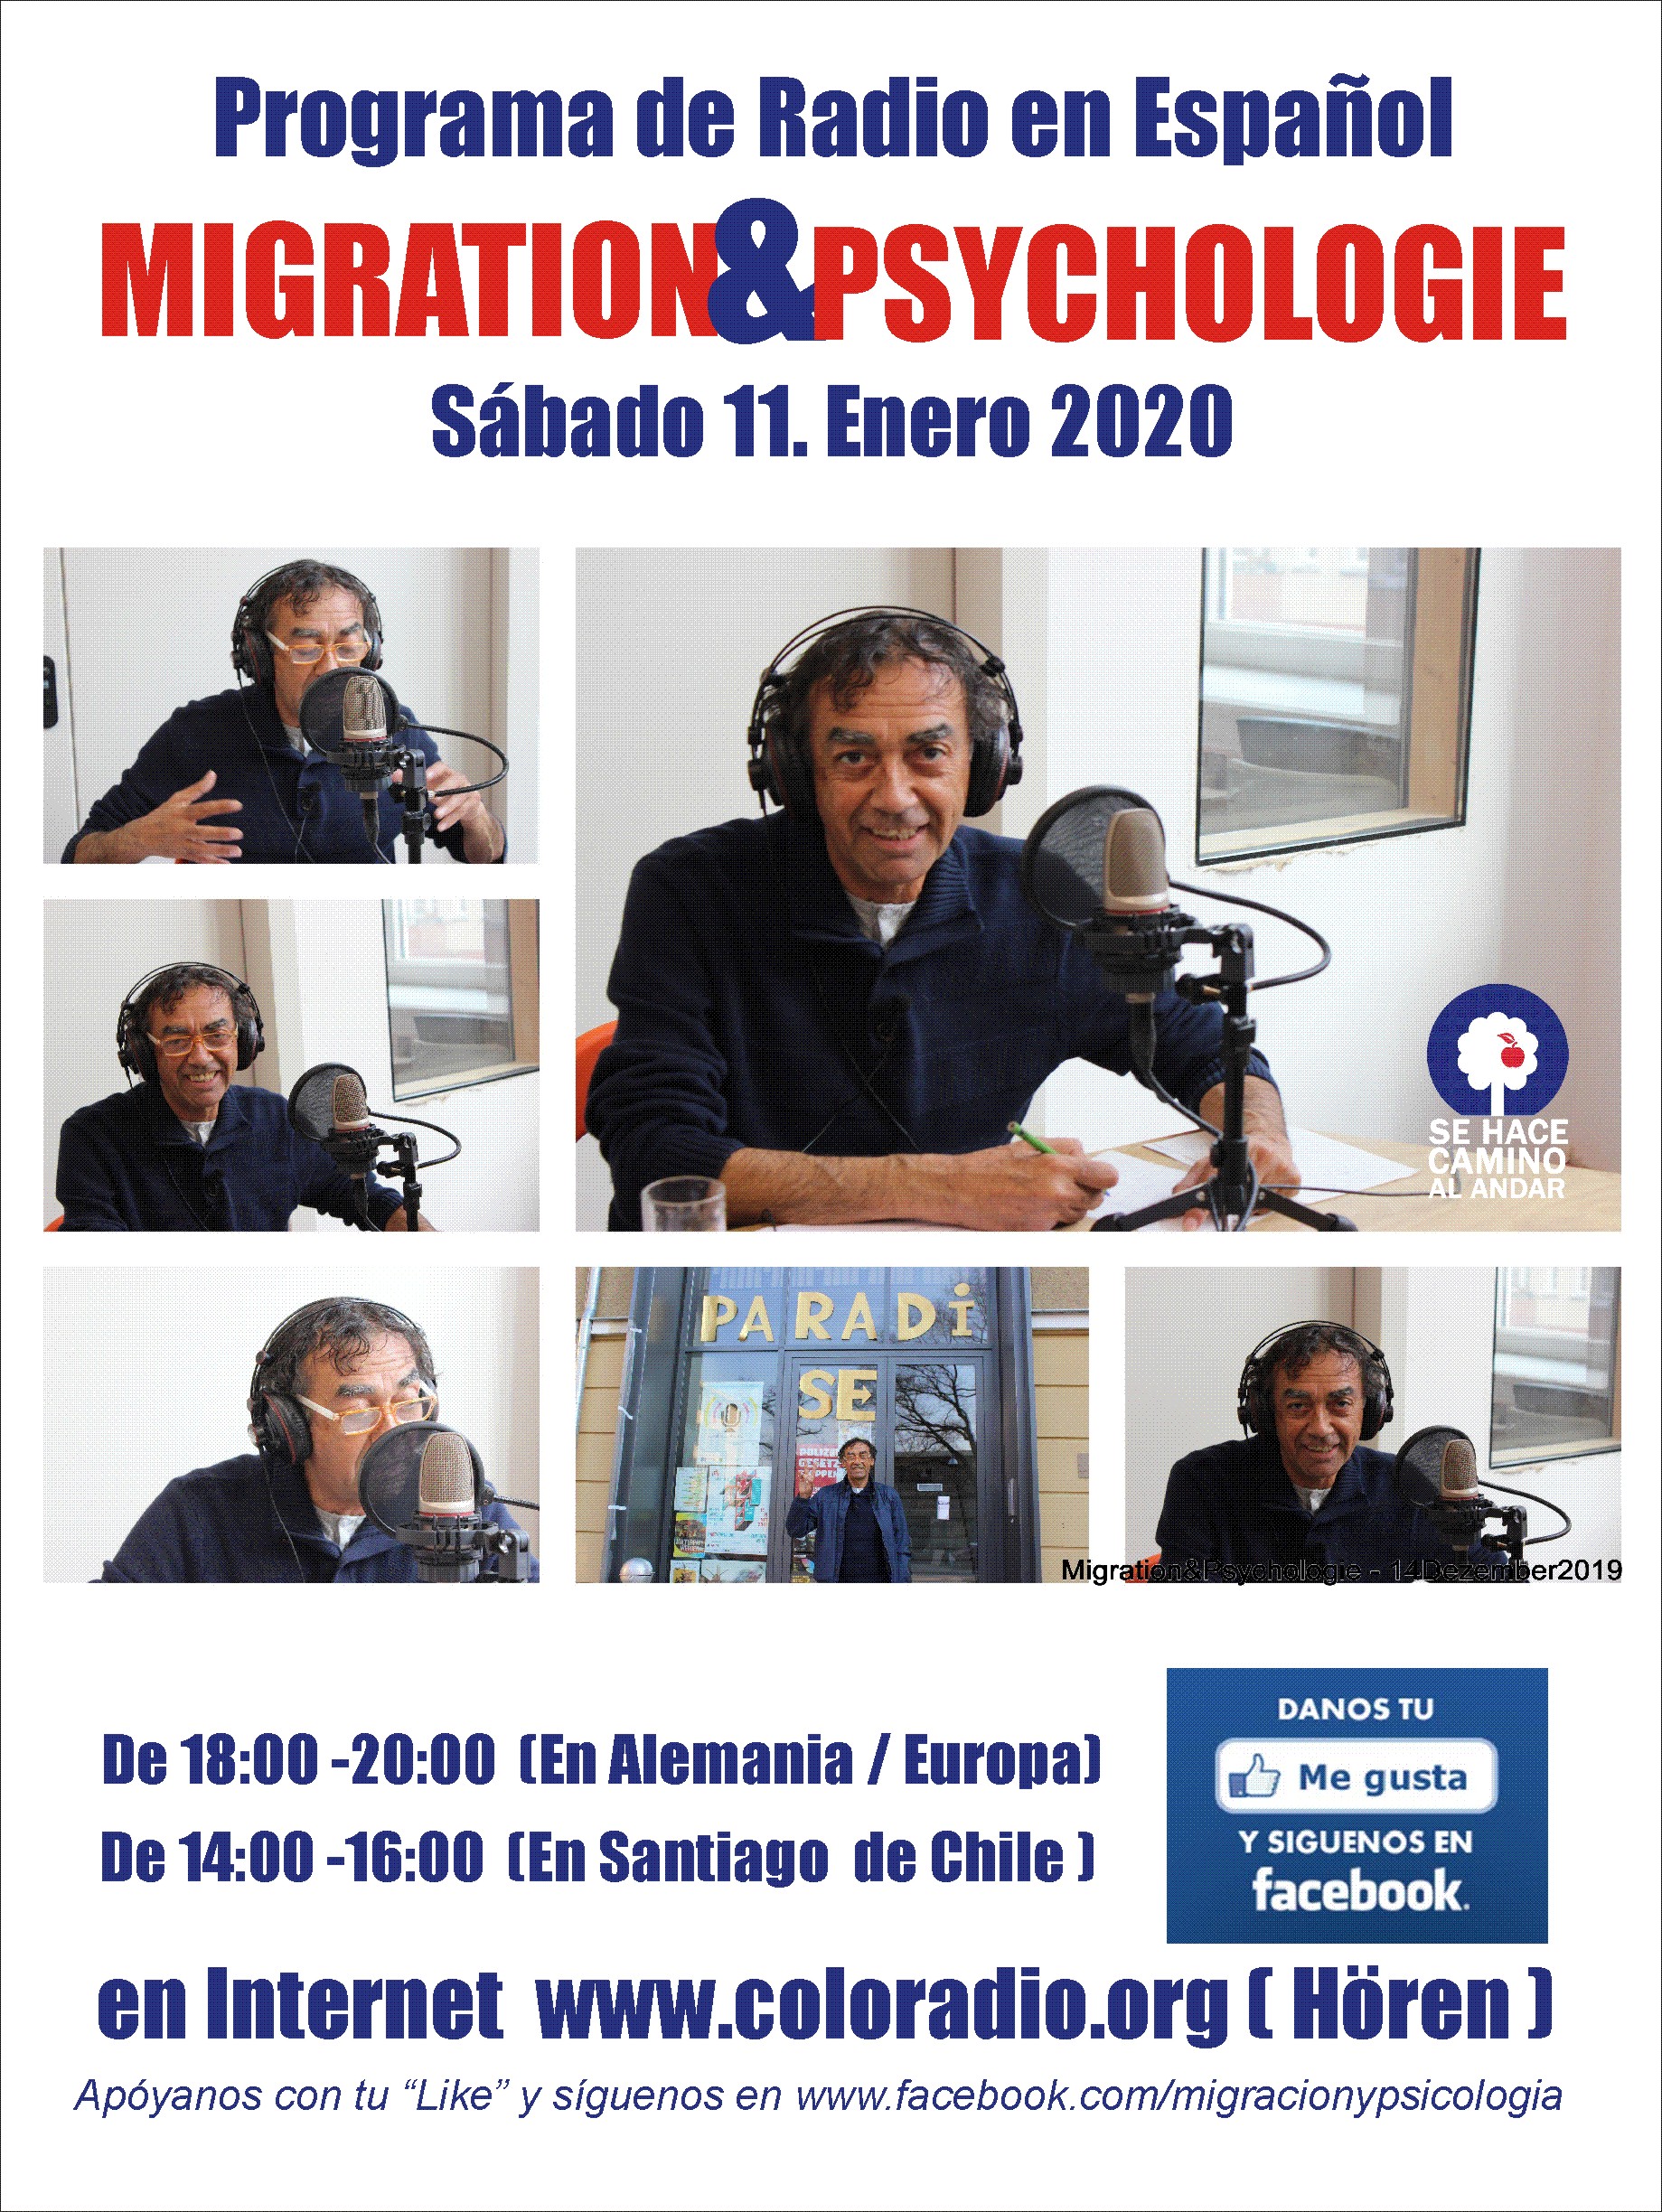 Programa de Radio Migration&Psychologie en español